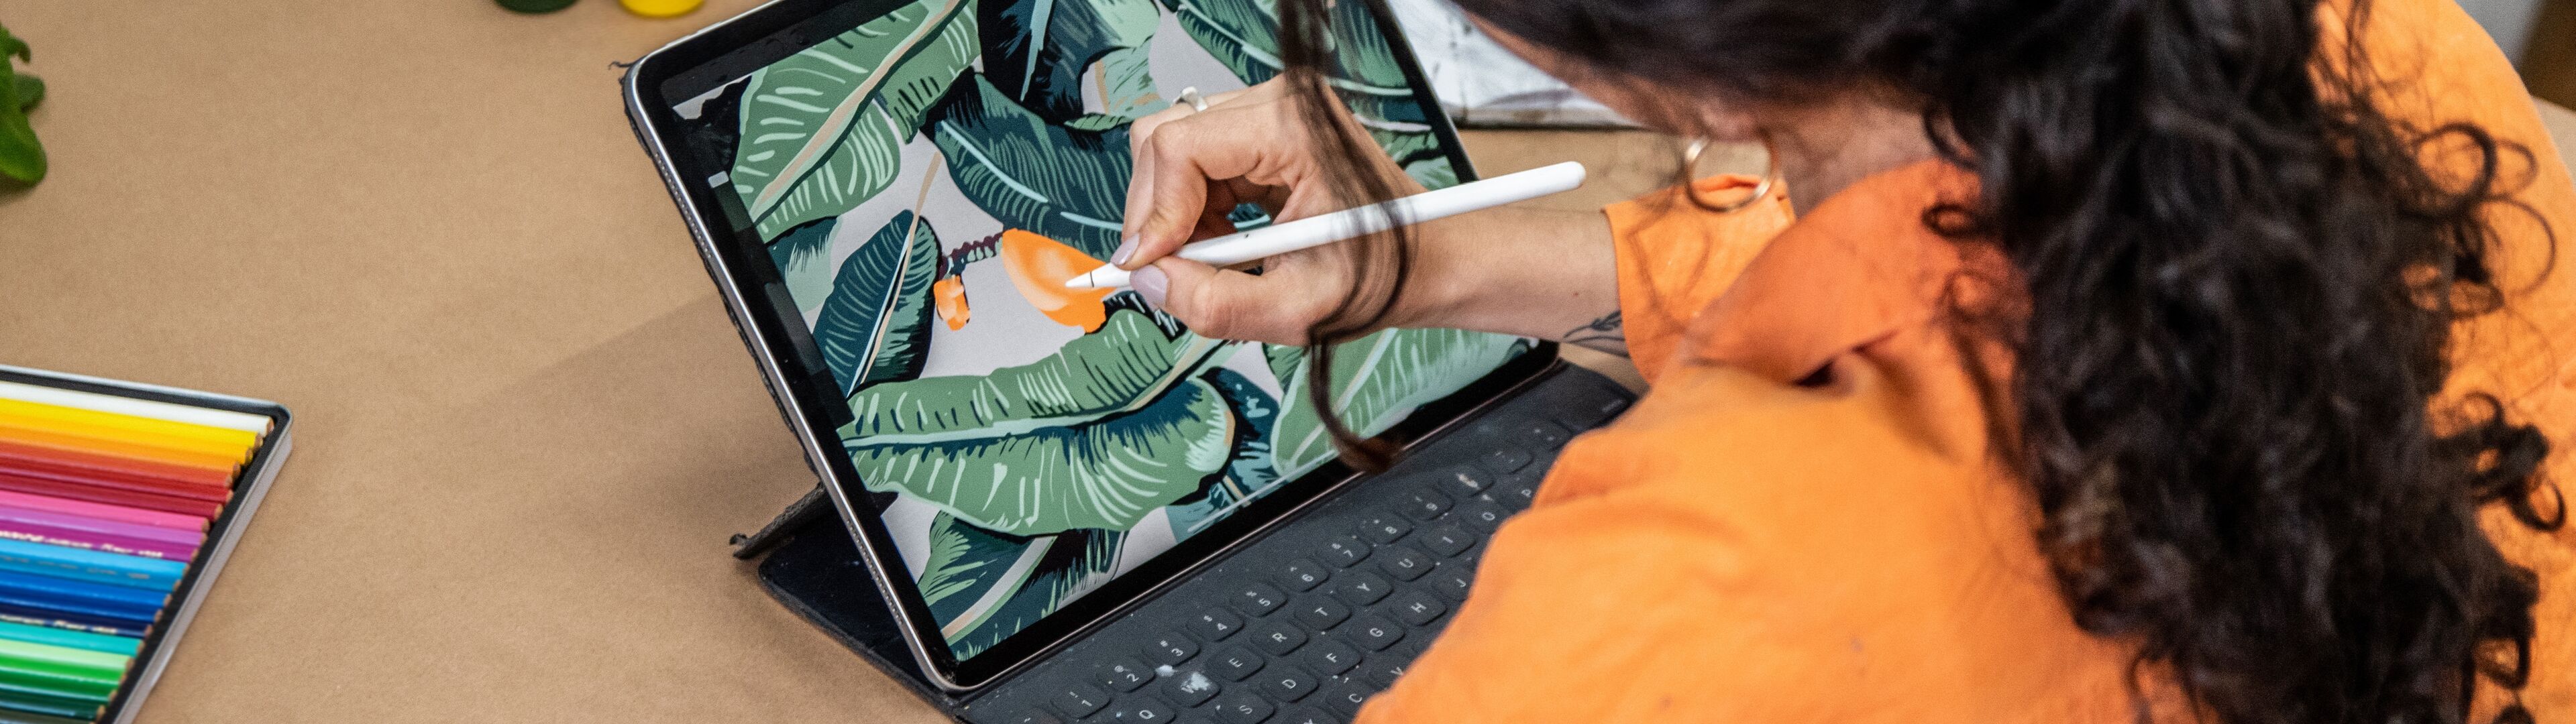 Un artista con camisa naranja usa un lápiz óptico en una tableta para pintar digitalmente un diseño de hojas tropicales.